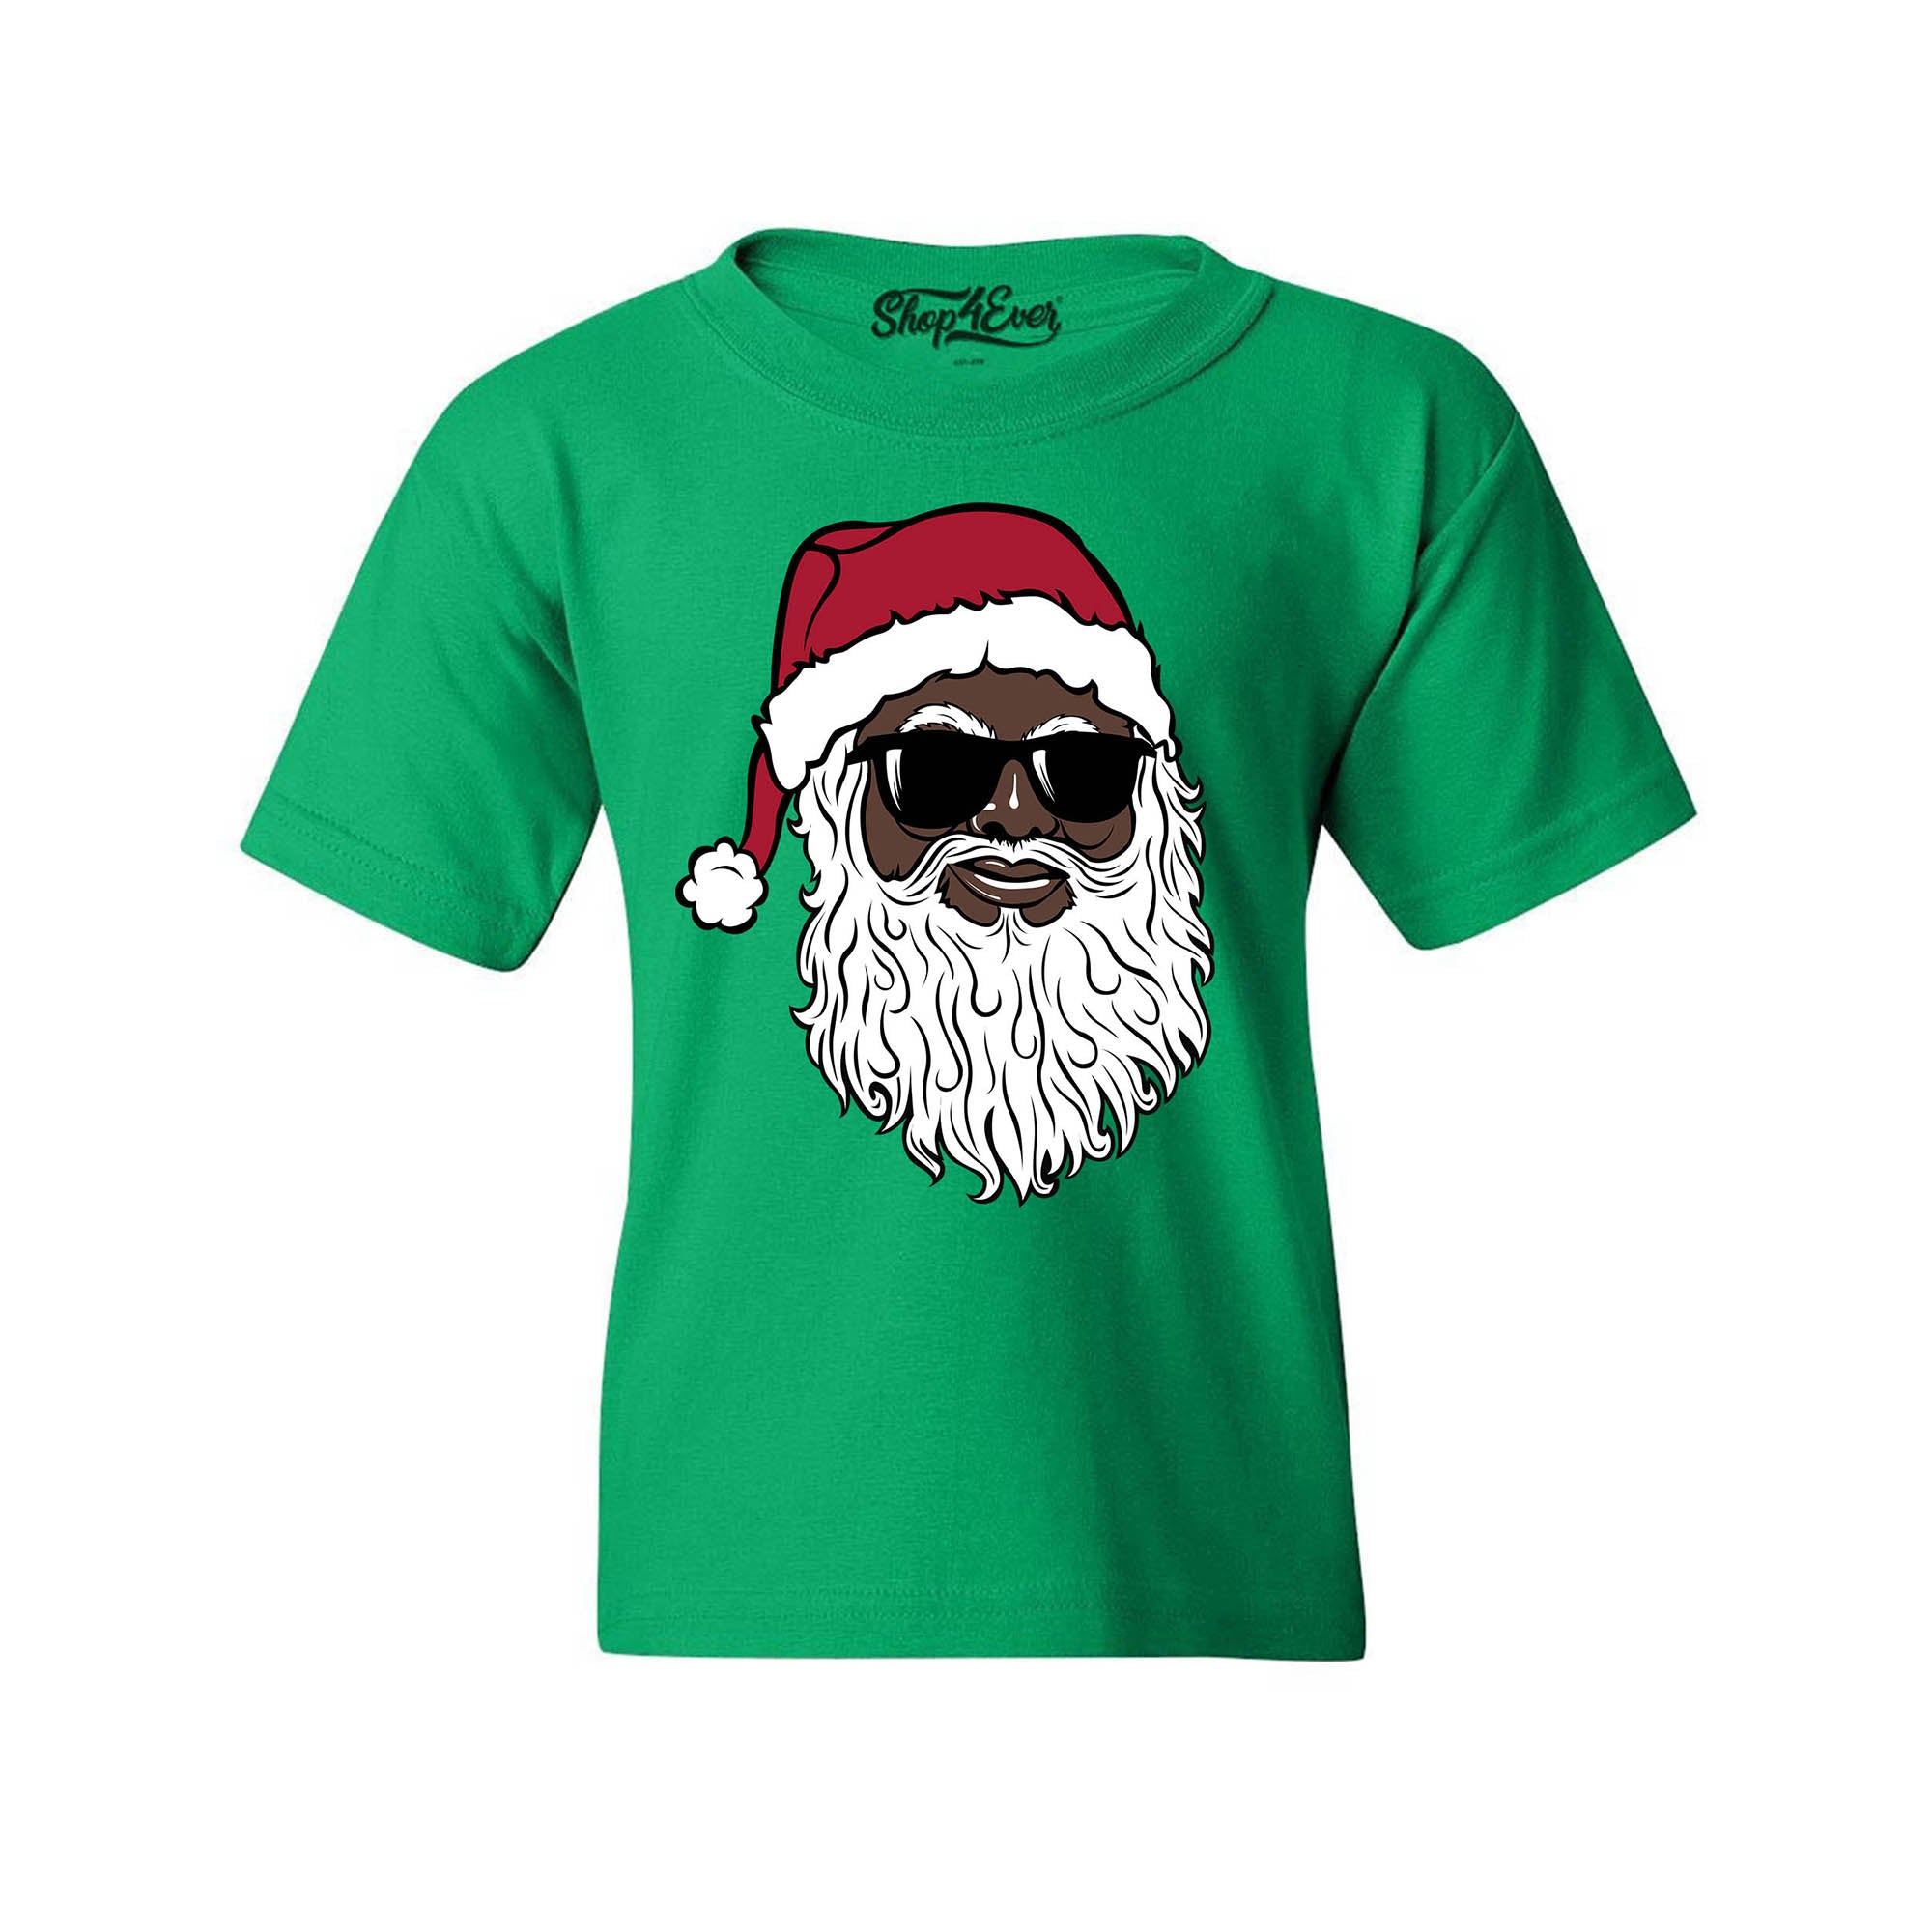 Santa Claus Wearing Sunglasses Christmas Xmas Youth's T-Shirt